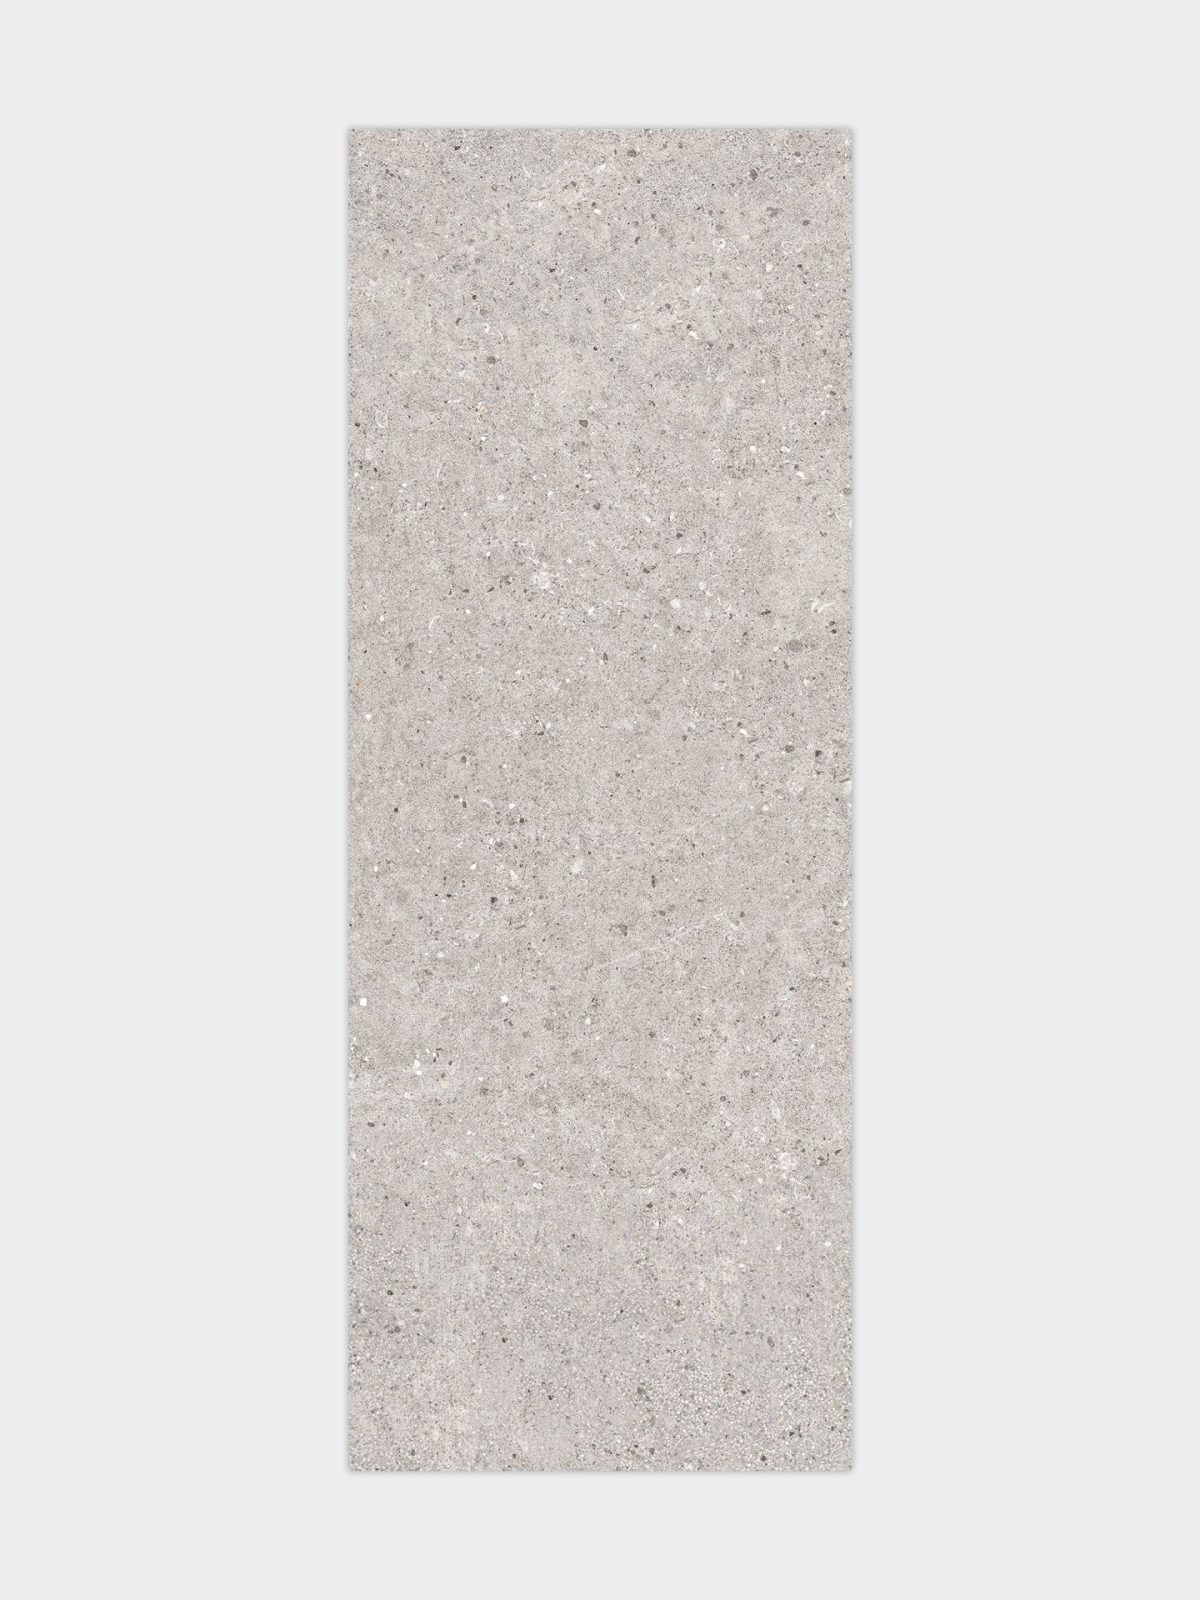 Brouwerij smal aanbidden Porcelanosa Prada Acero 45x120cm 100239845 | Tile and Stone Online